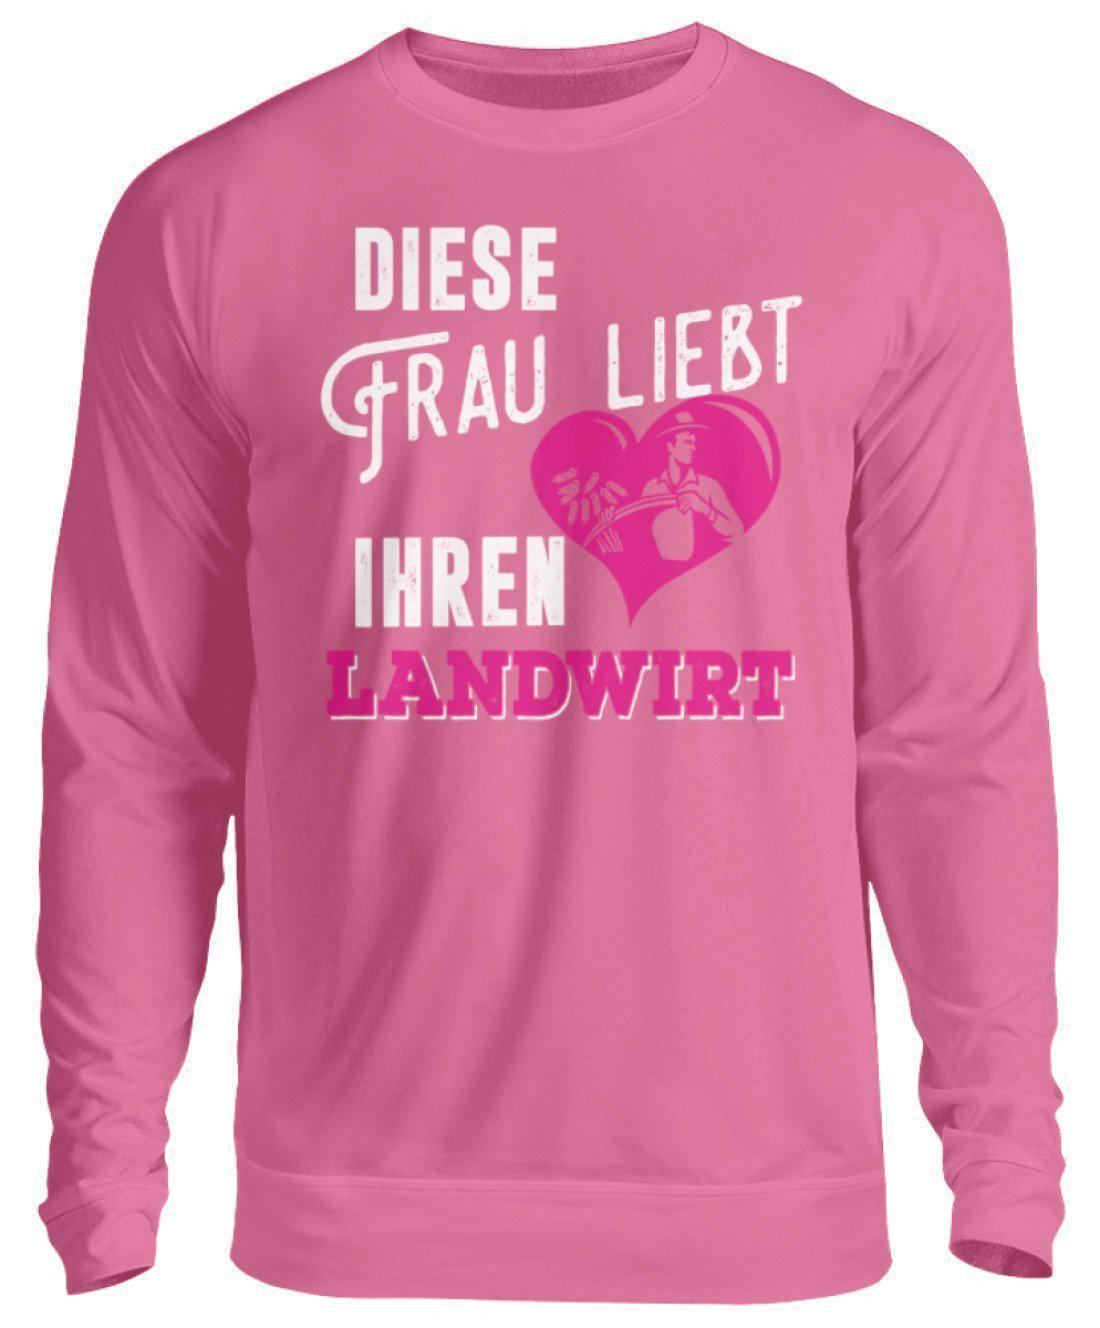 Diese Frau liebt ihren Landwirt · Unisex Sweatshirt Pullover-Unisex Sweatshirt-Candyfloss Pink-S-Agrarstarz